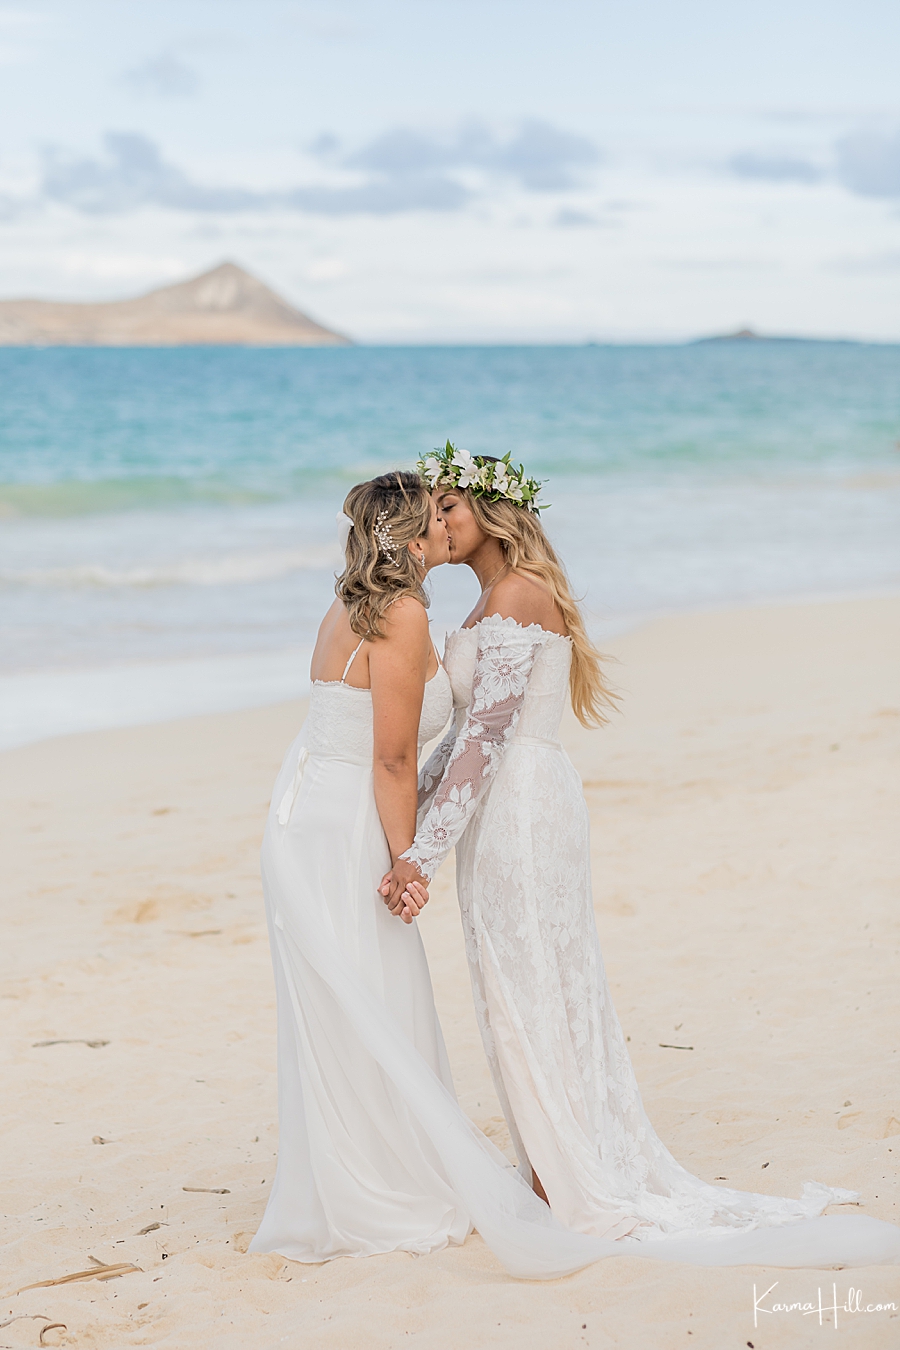 Hawaii couple at wedding